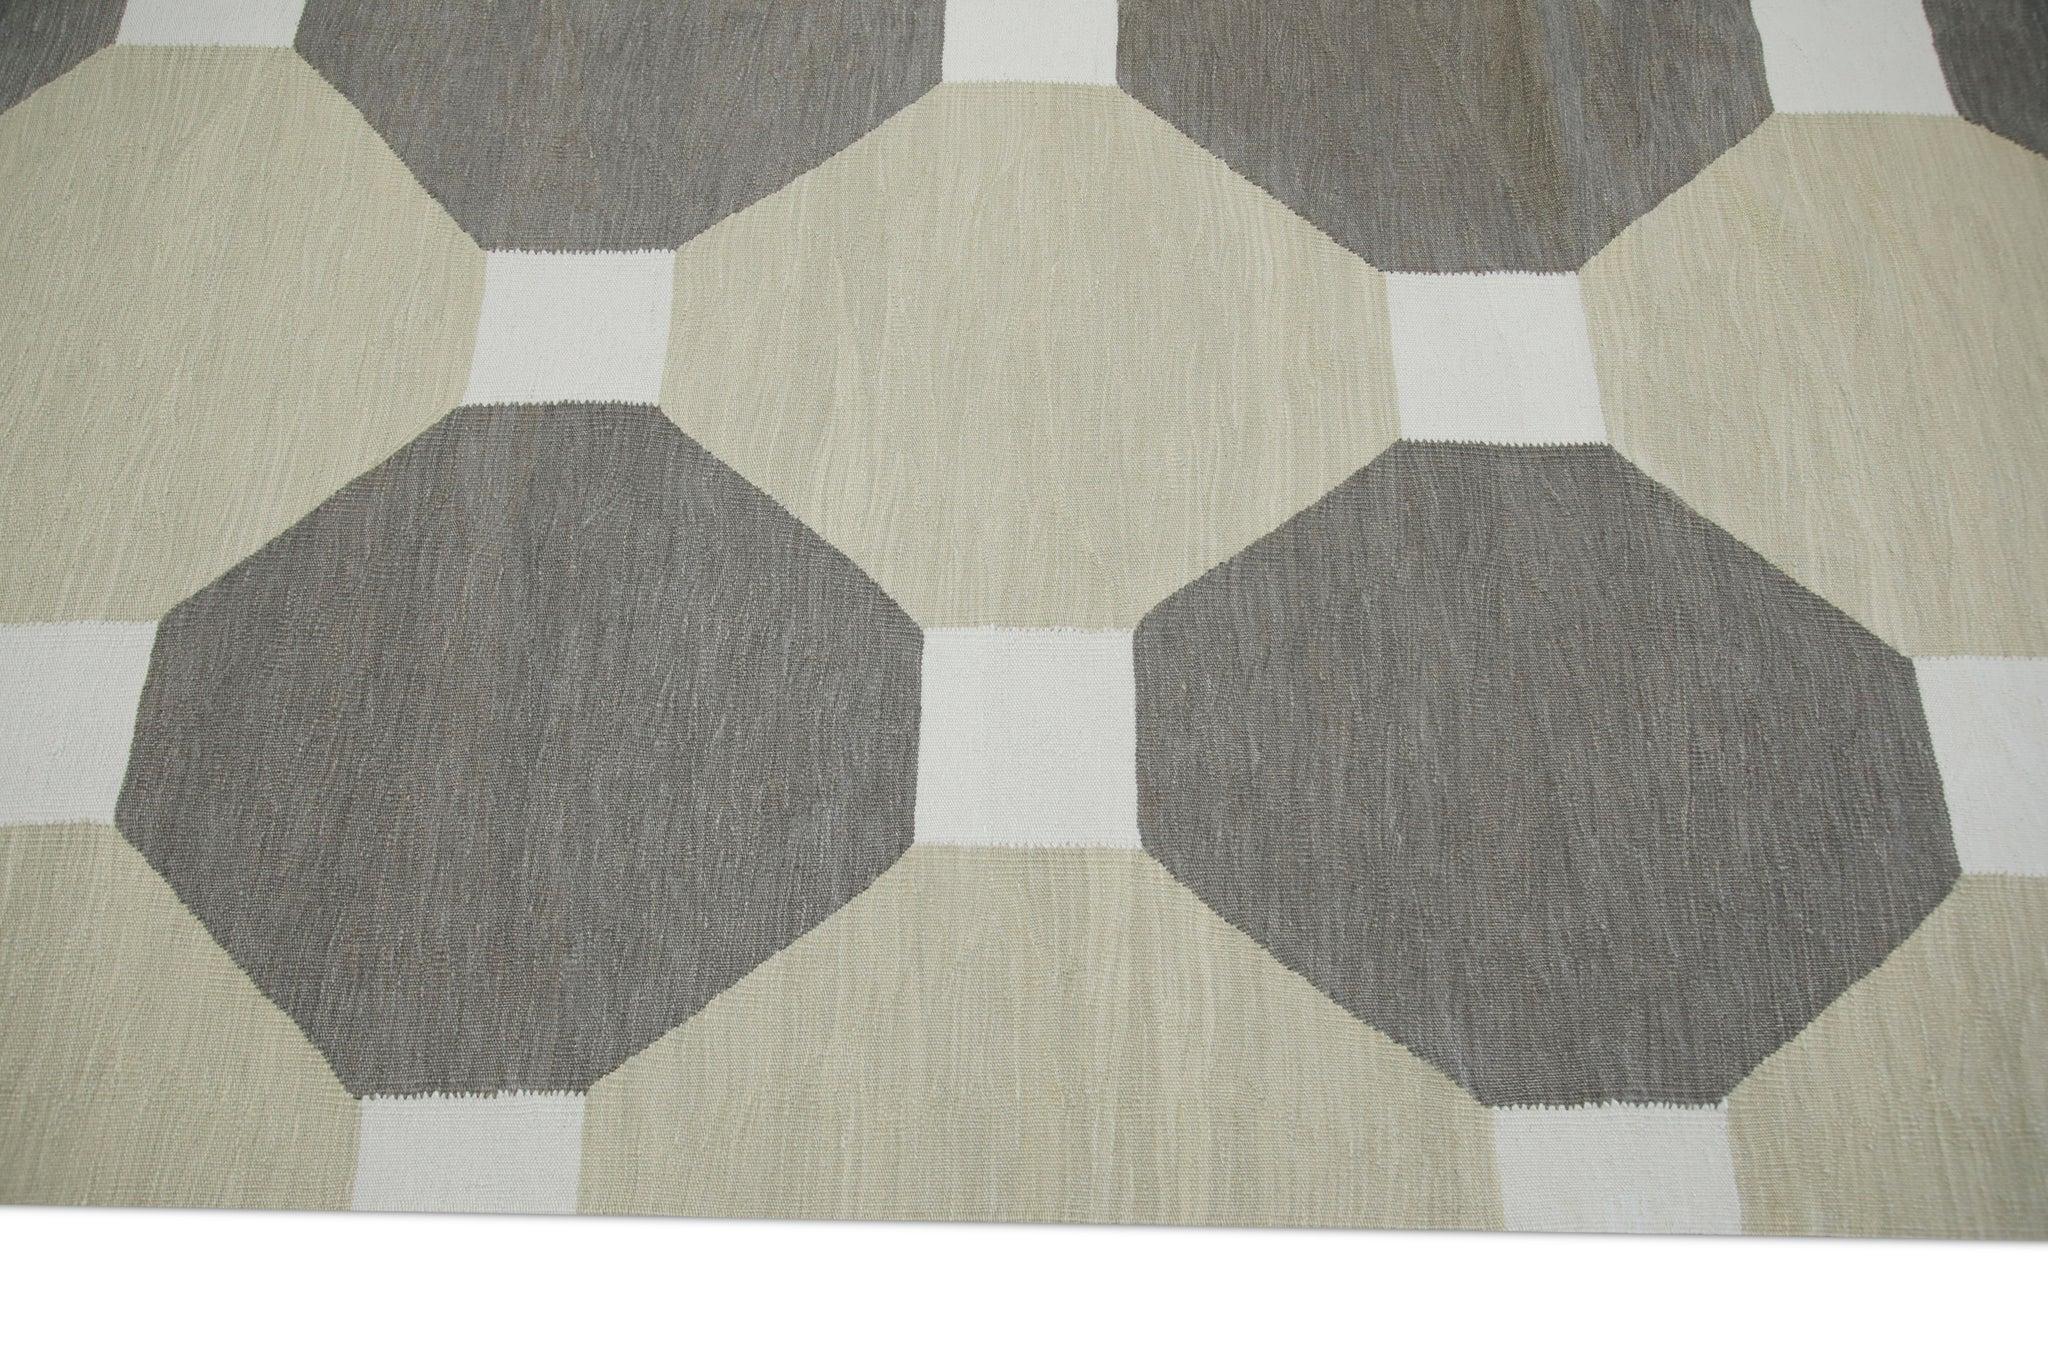 Tan and Brown Flatweave Handmade Wool Rug in Geometric Pattern 8' X 10'4